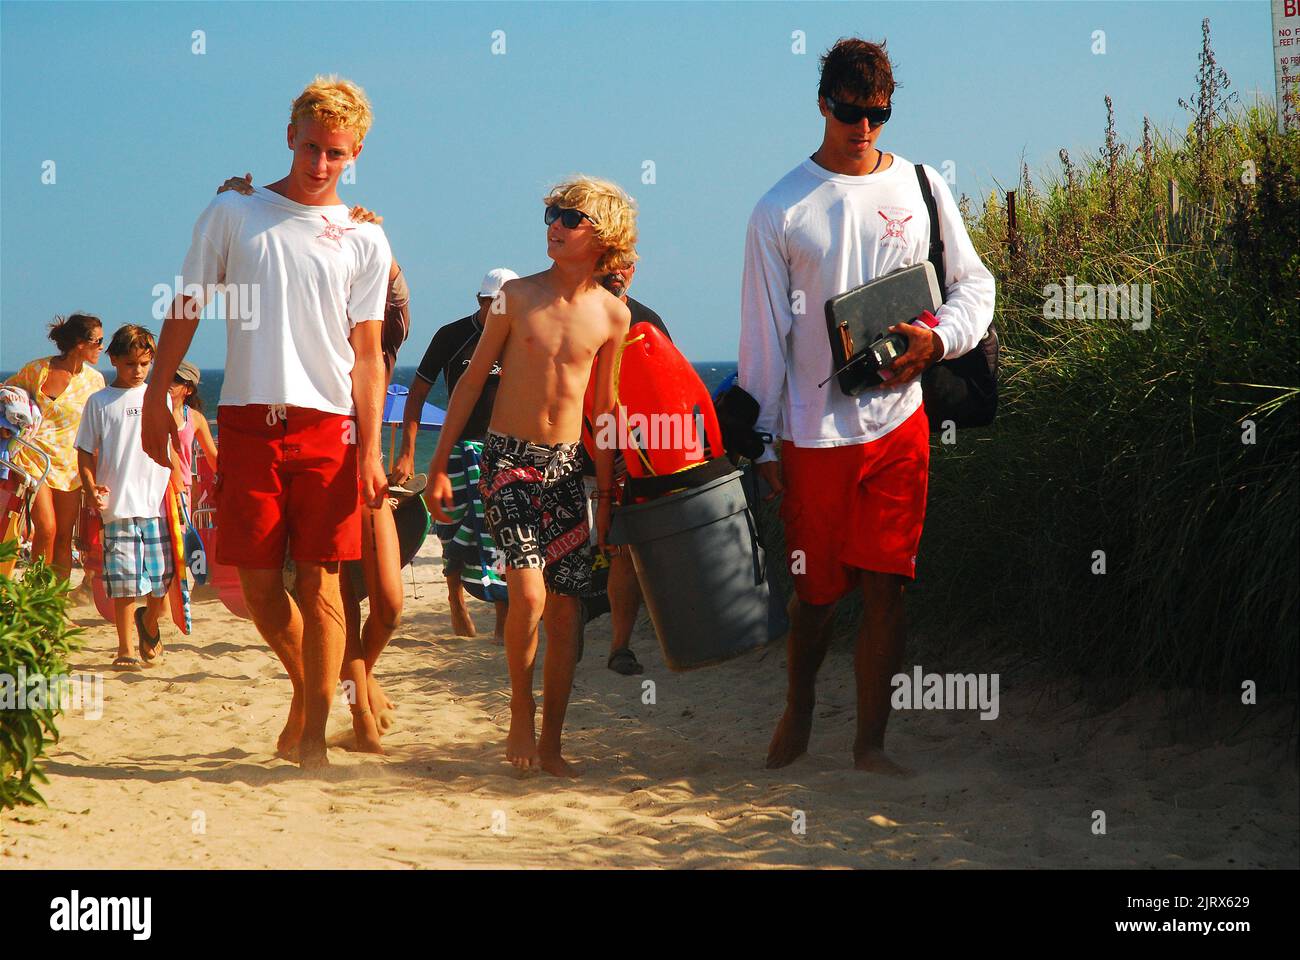 Ein kleiner Junge geht spazieren und spricht mit zwei Rettungsschwimmern, während sie den Strand verlassen und ihre Ausrüstung an einem Sommerferientag am Strand tragen Stockfoto